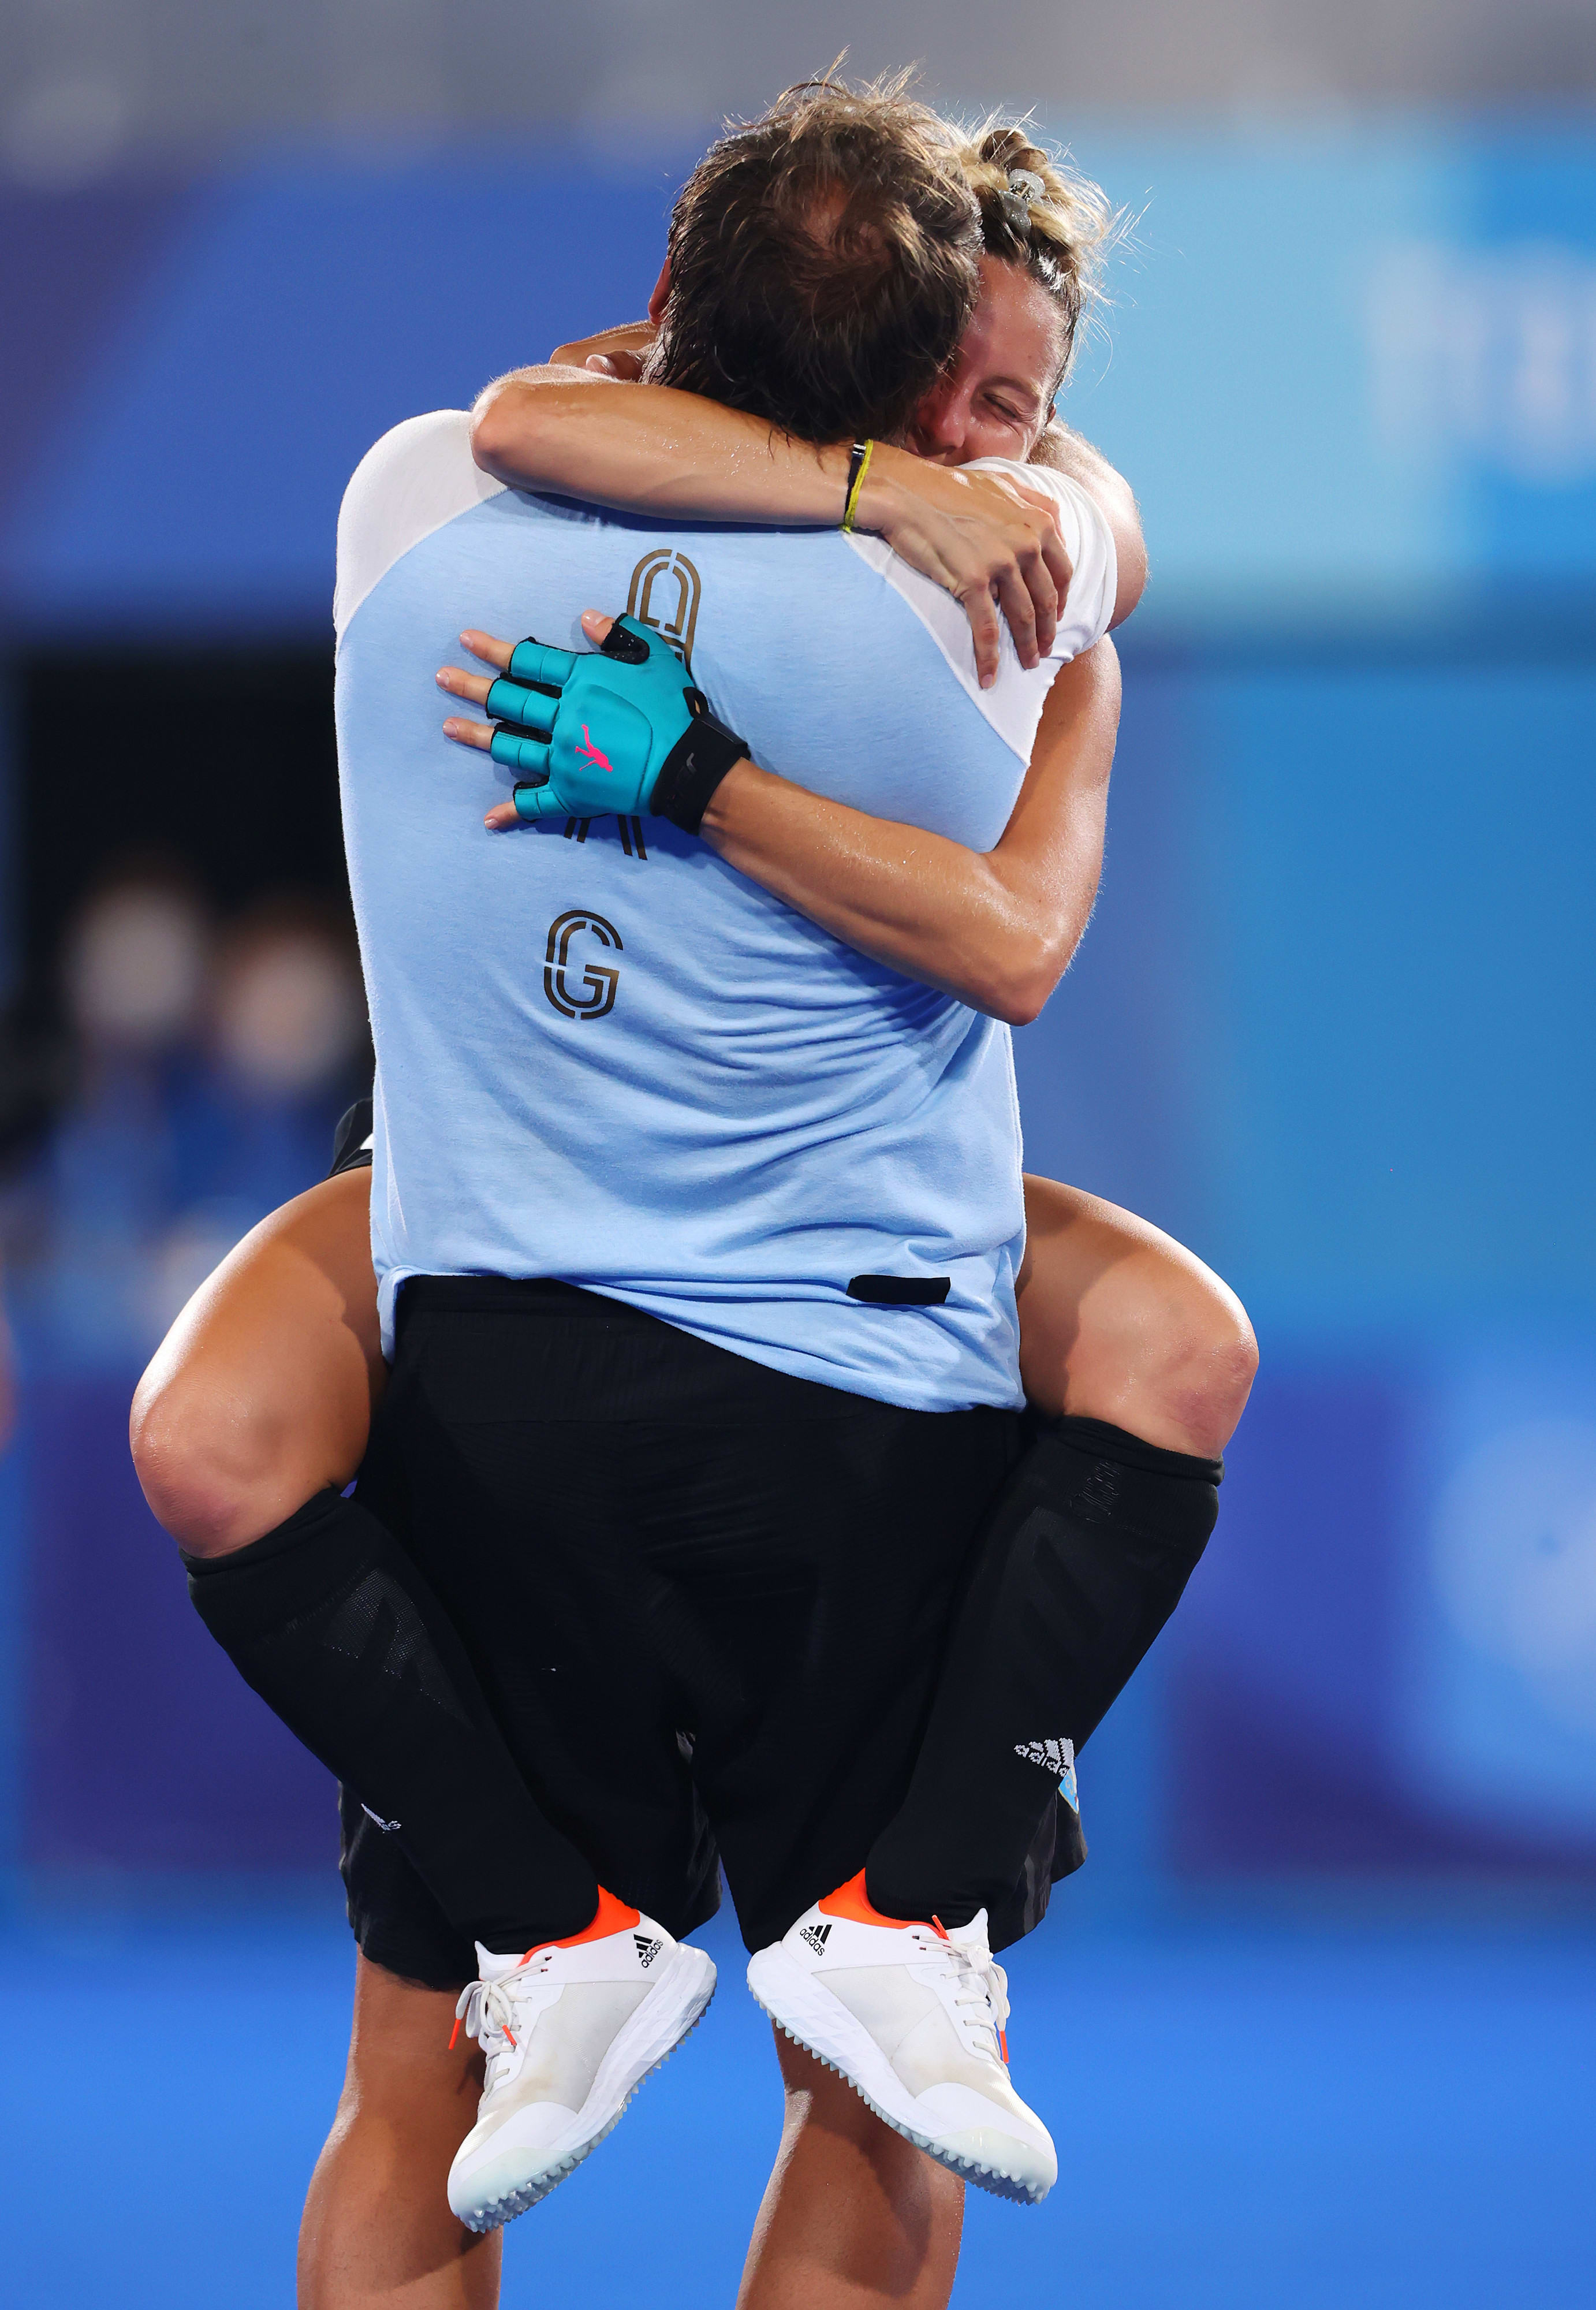 מיקאלה רטגי שחקנית נבחרת ארגנטינה הוקי שדה עם אביה קרלוס רטגי